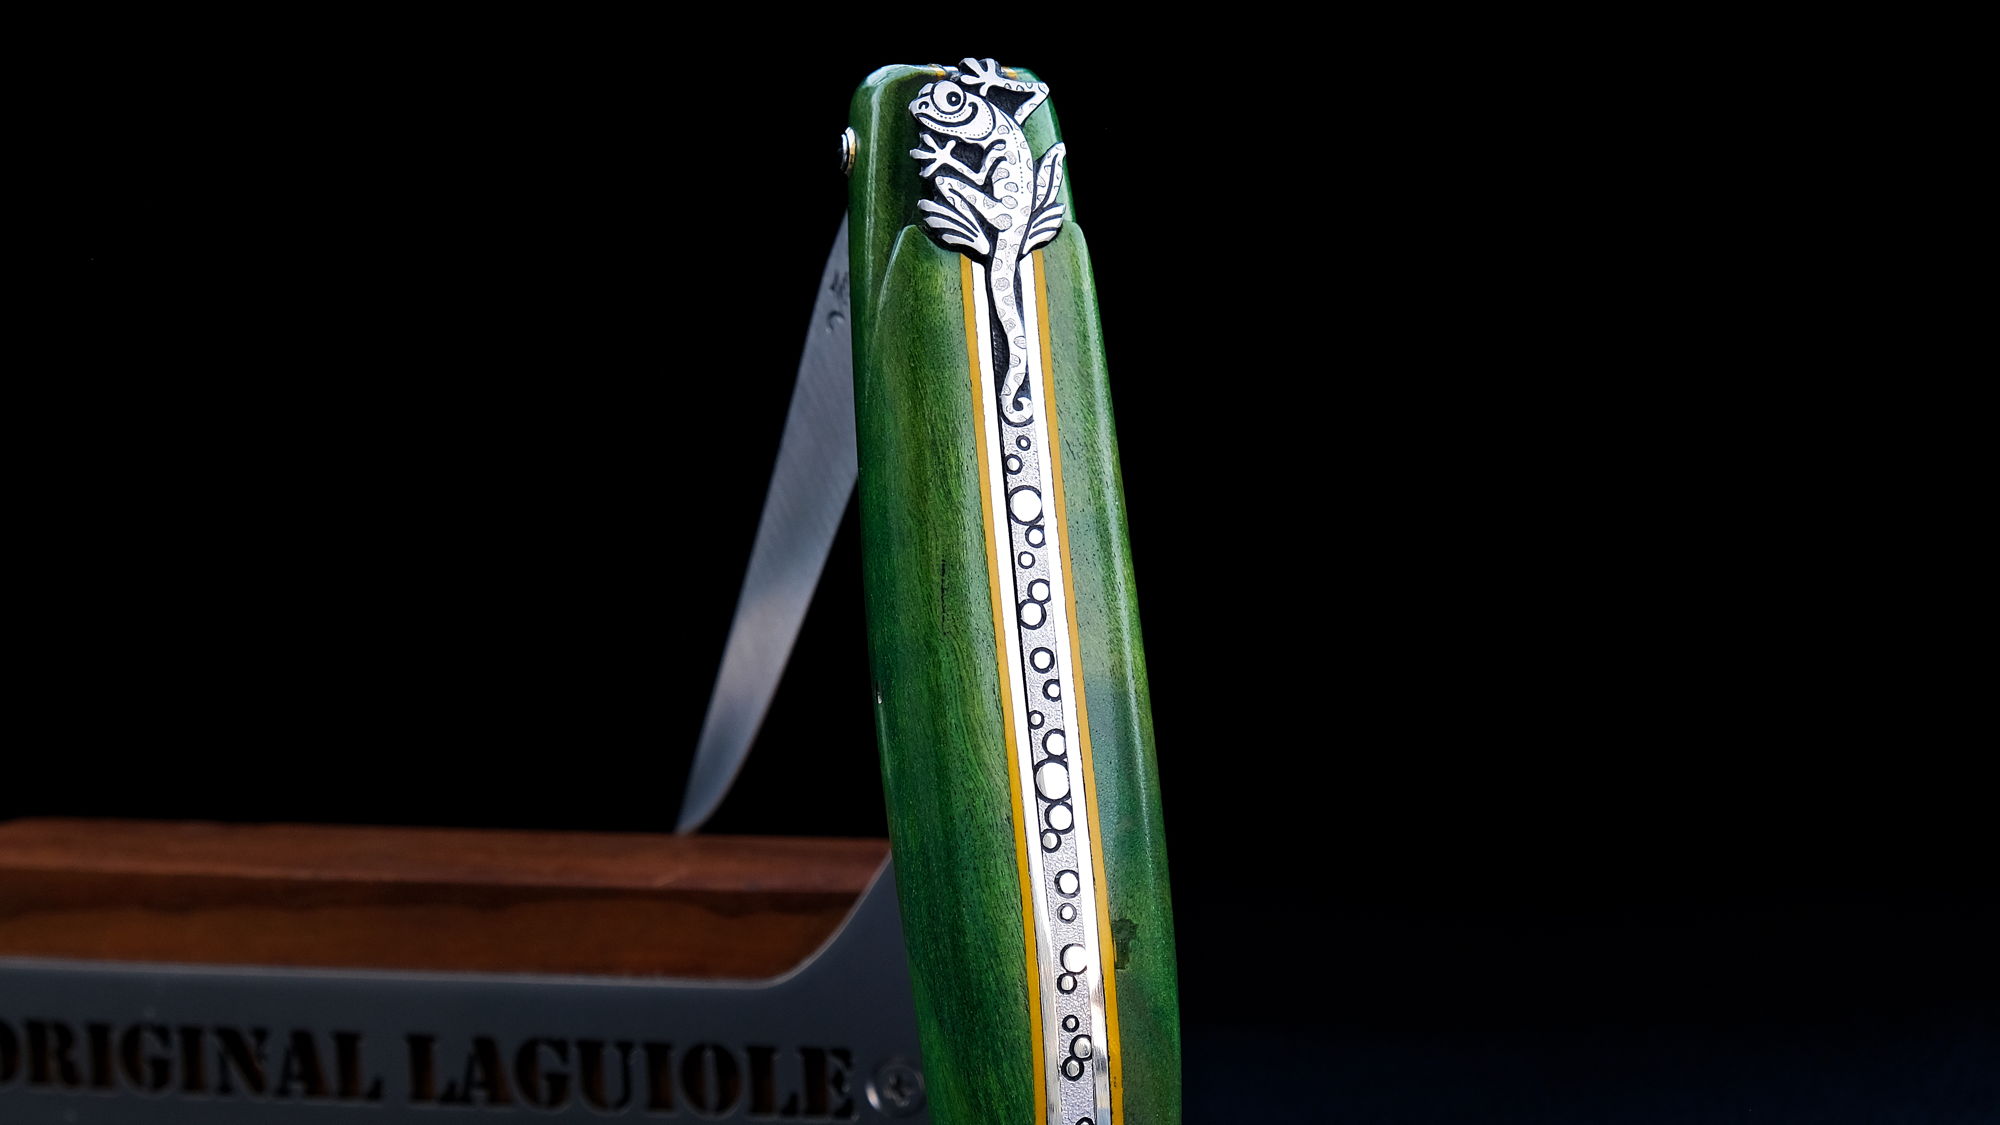 Original laguiole - Laguiole-Taschenmesser Jean-Michel Cayron, Edition GEGKO, Buche, guillochierte Biene